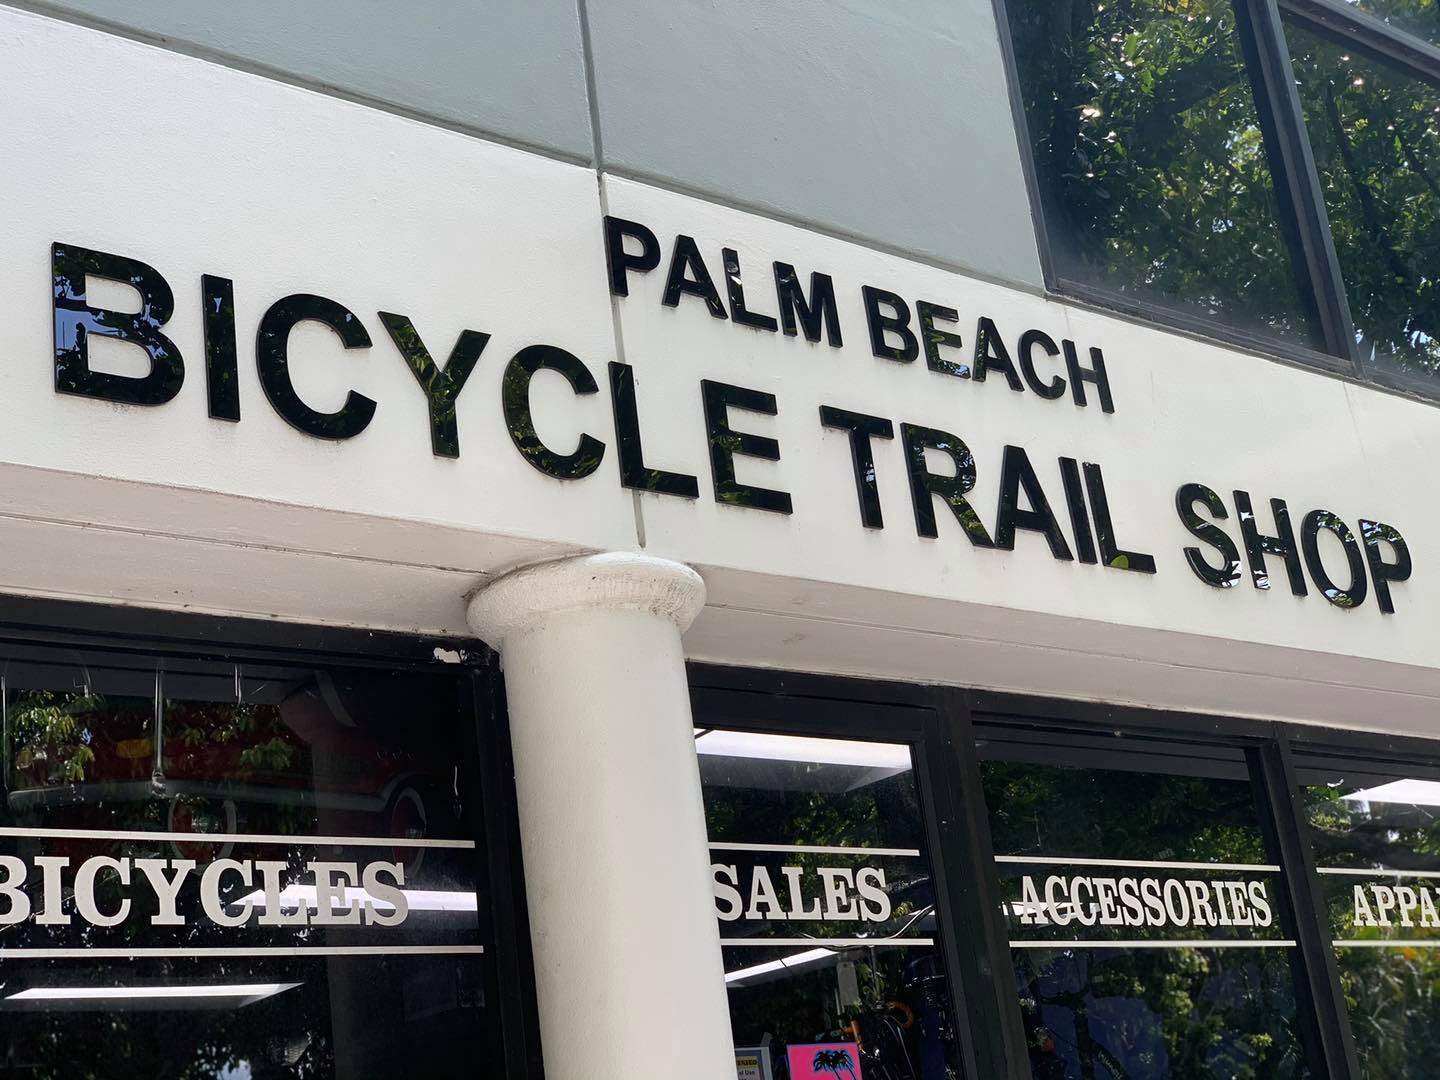 Pet Friendly Palm Beach Bicycle Trail Shop